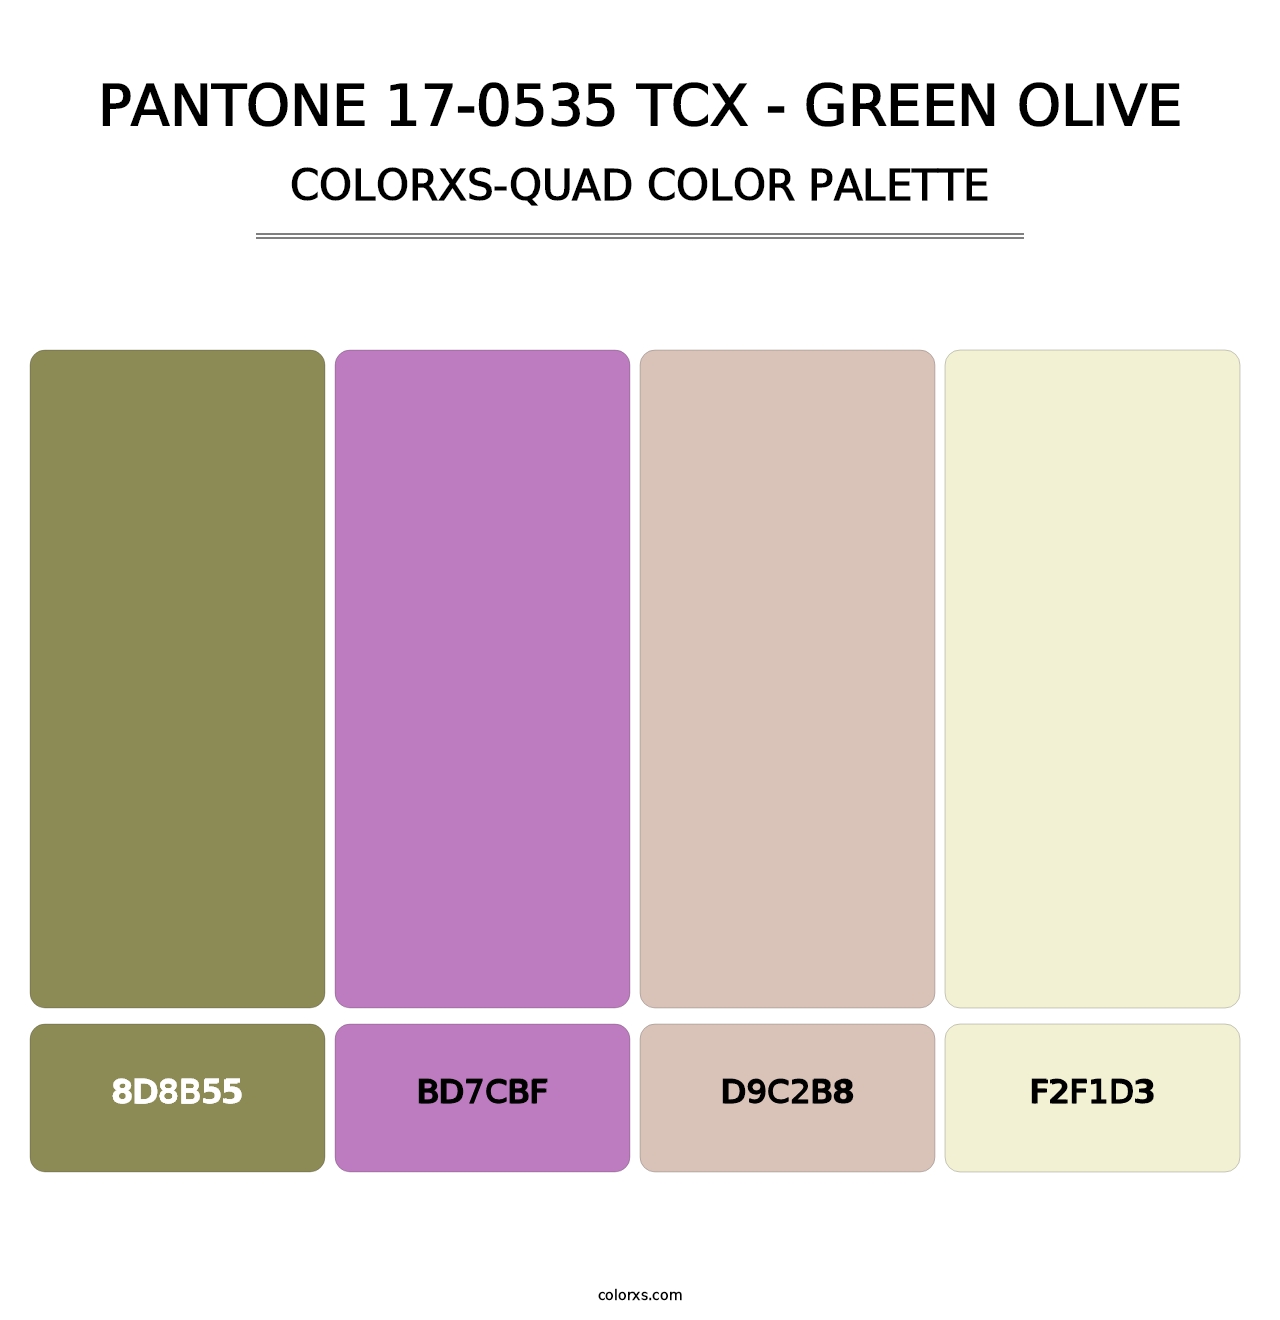 PANTONE 17-0535 TCX - Green Olive - Colorxs Quad Palette